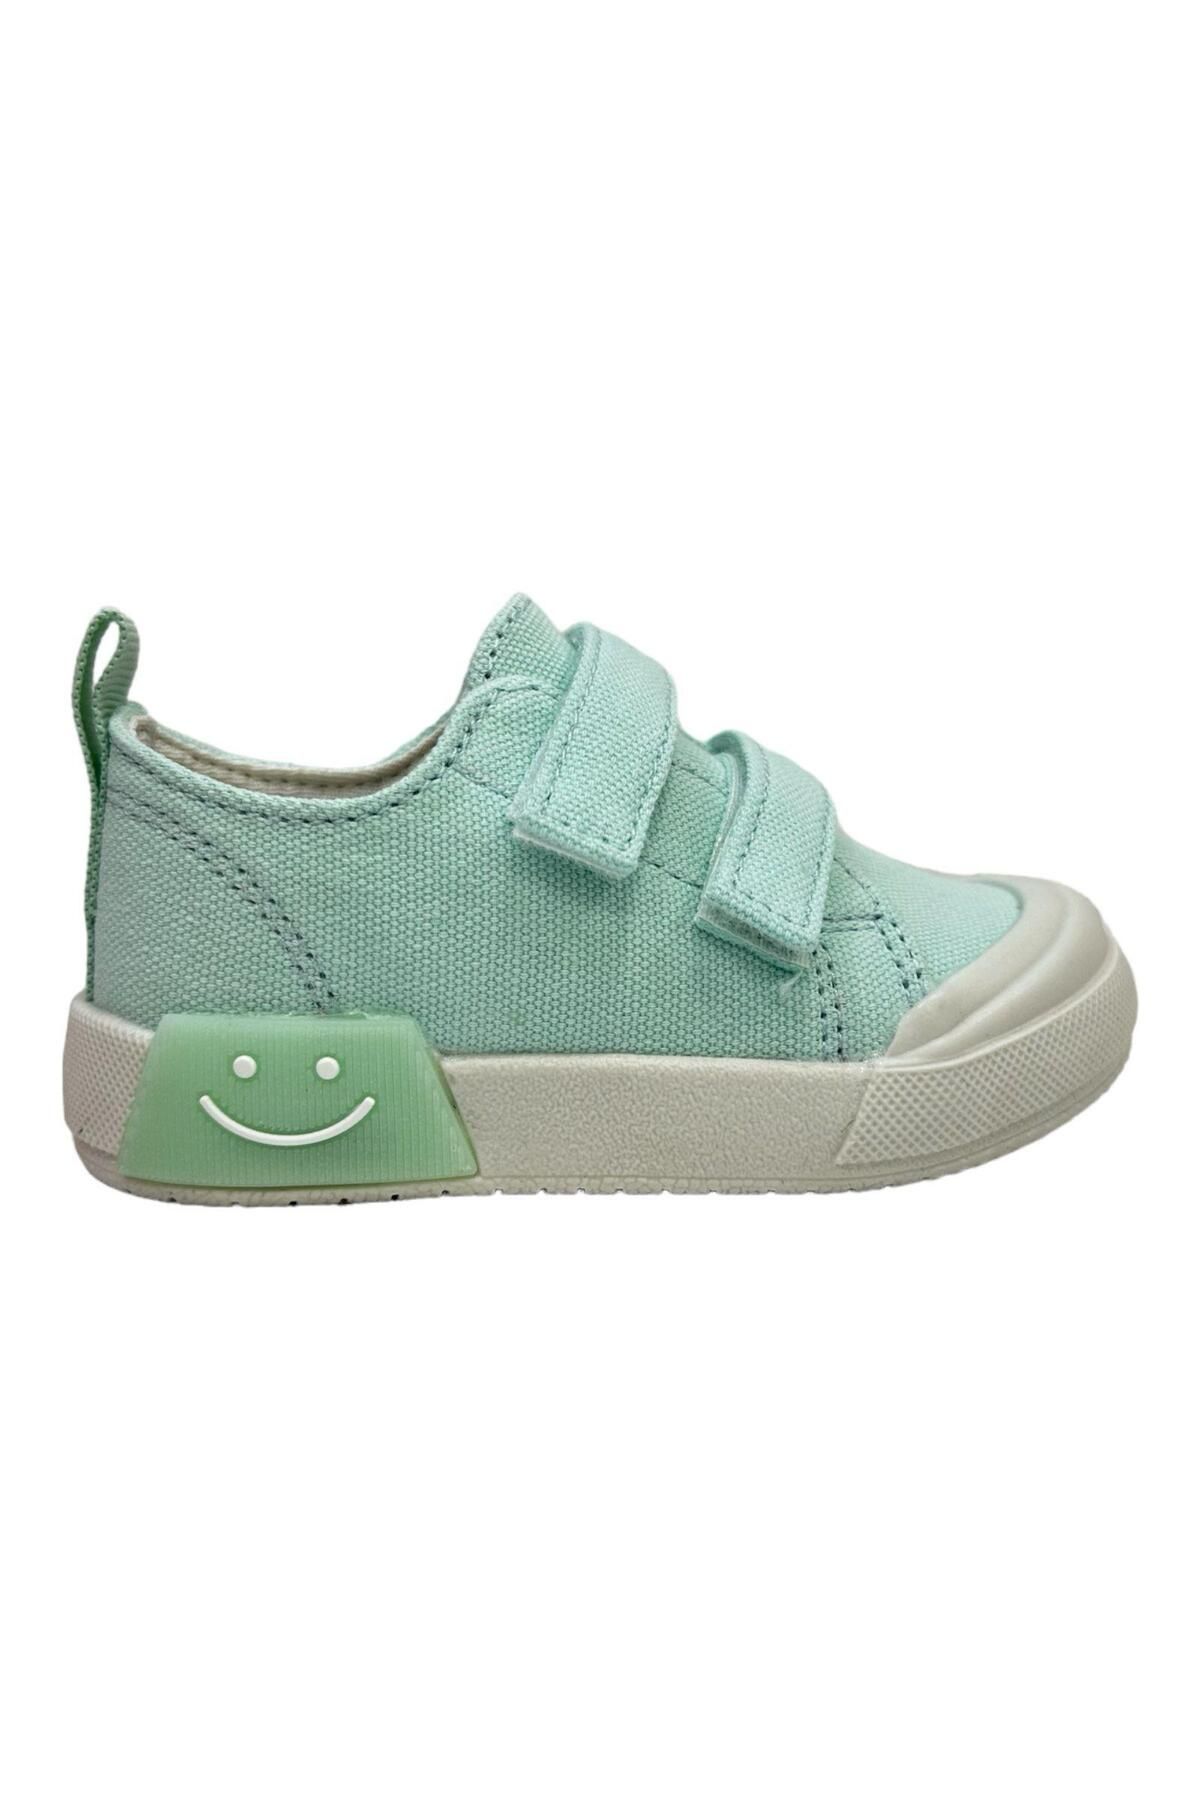 Vicco Luffy Bebe Keten Işıklı Ayakkabı Yeşil